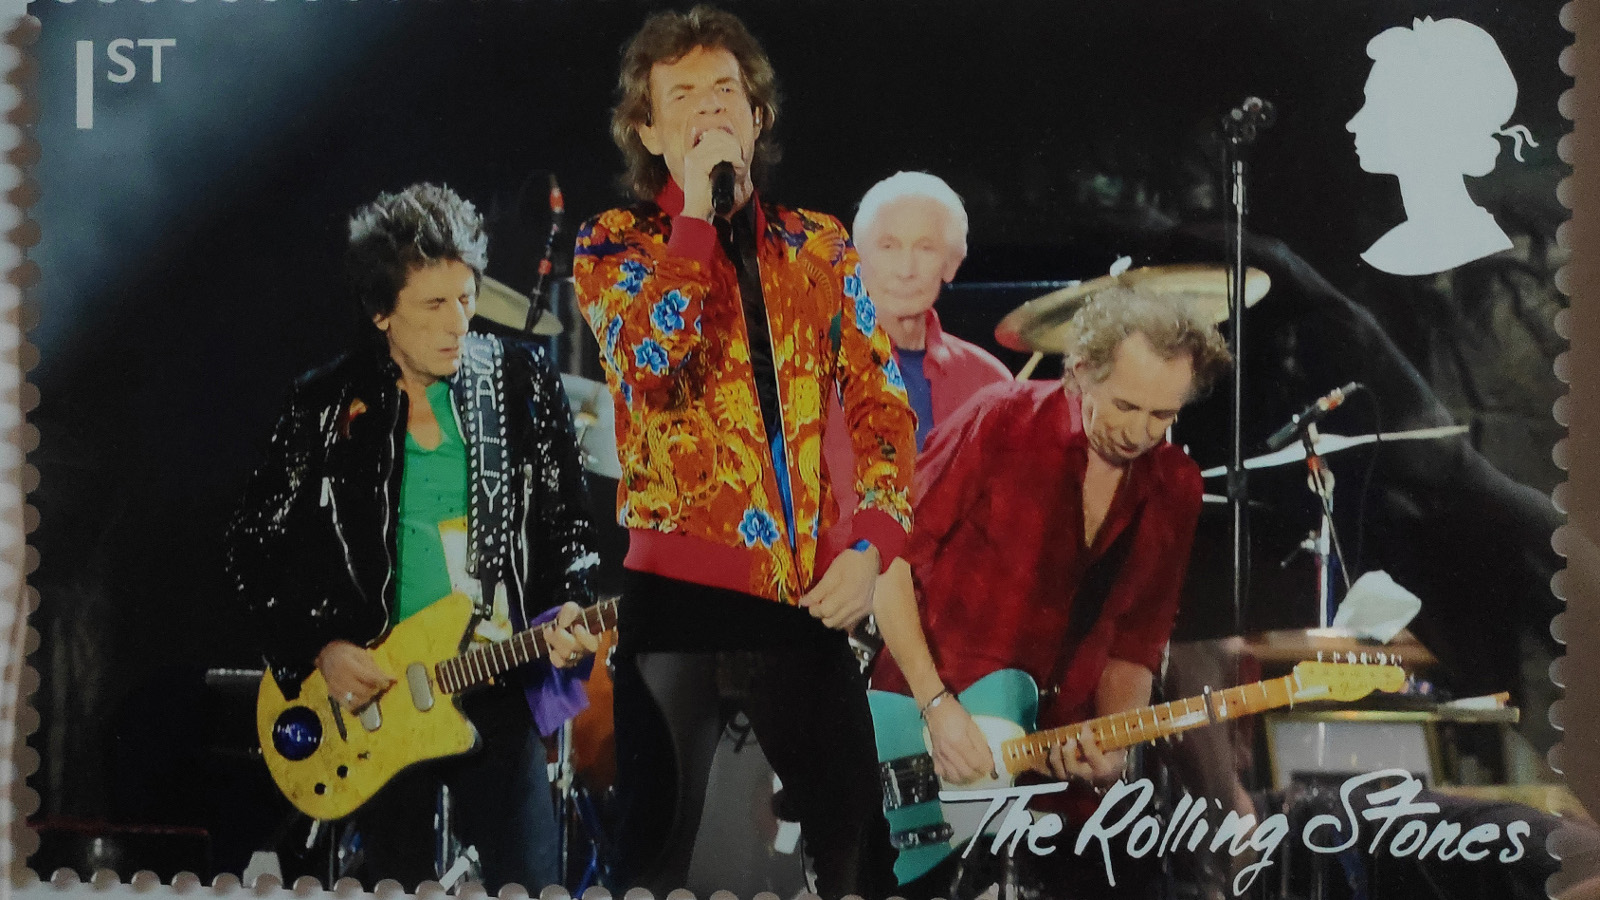 Kuvassa on Rolling Stones -yhtyeen postimerkki. Siinä ovat kitaristit takana ja edessä Keith Richards laulamassa mikin kanssa. Hänellä on punainen takki päällään.  